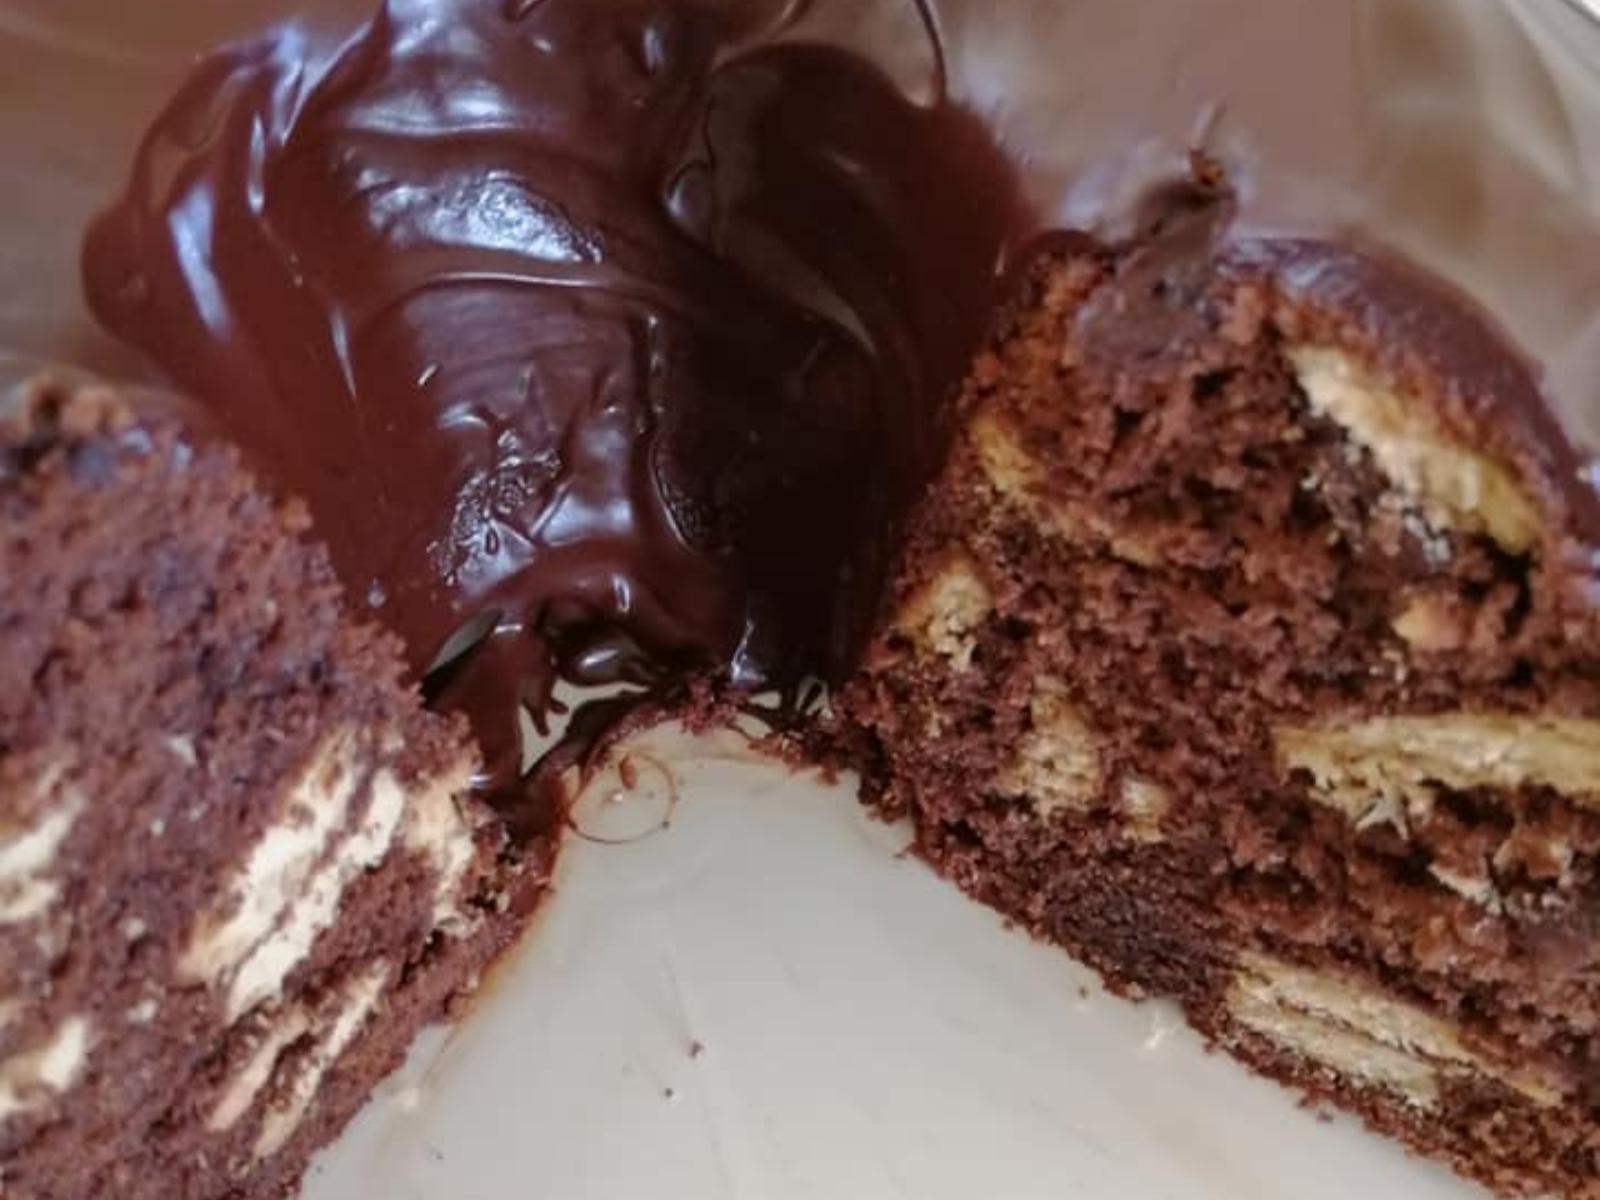 σοκολατένιο-κέικ-μωσαϊκό-συνταγή-